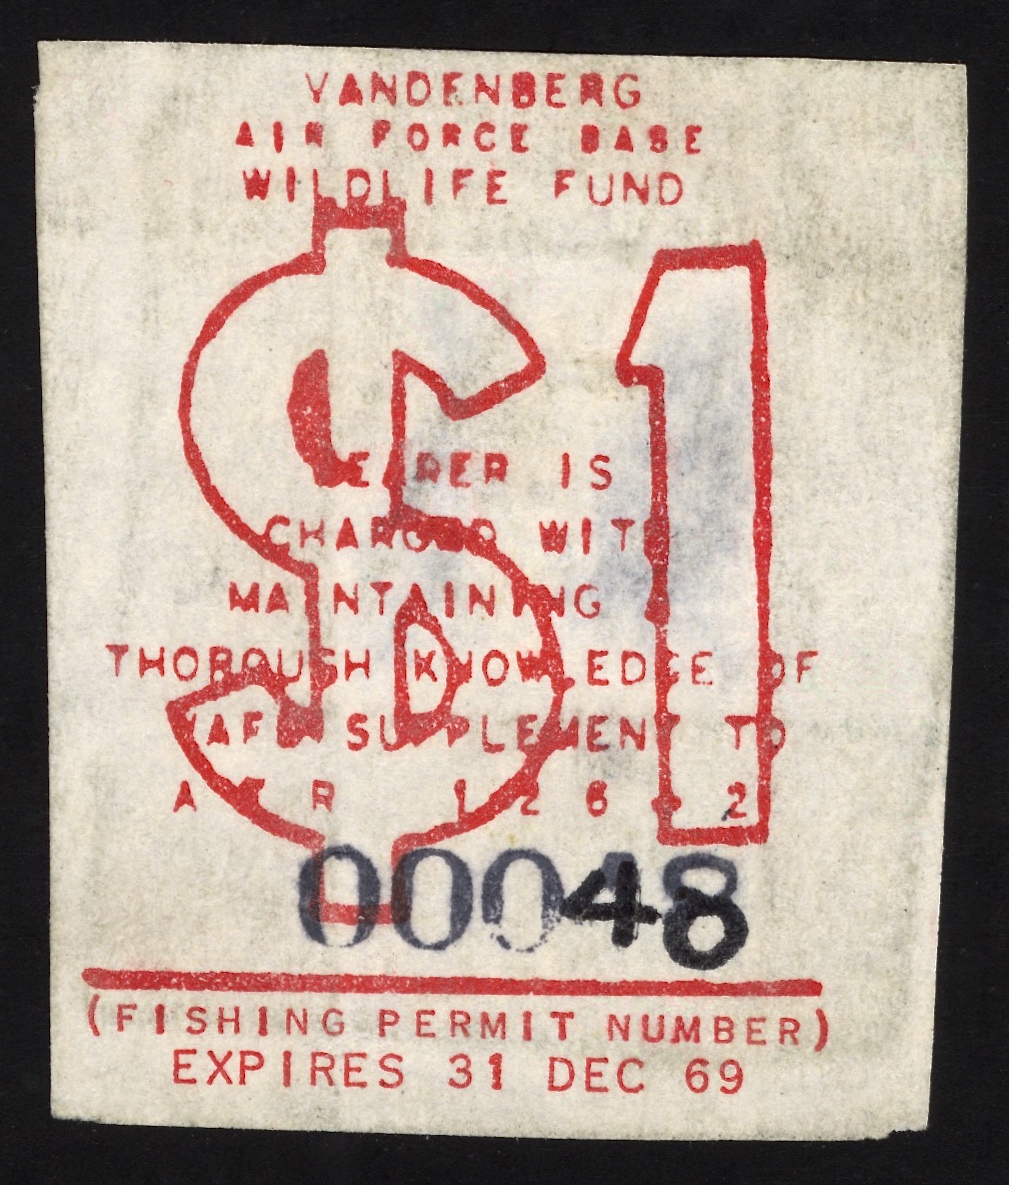 1969 VAFB Fishing